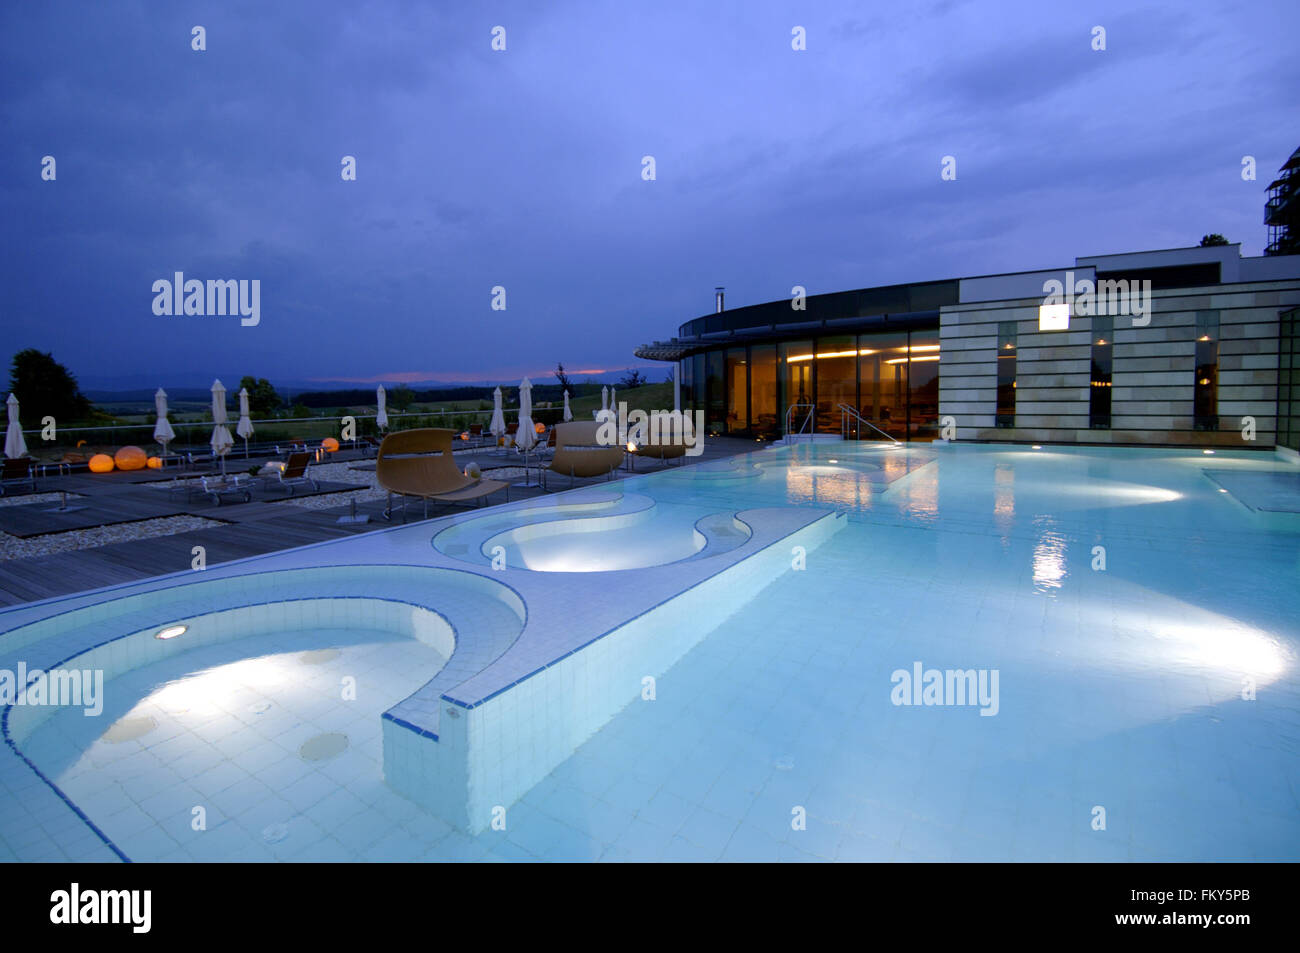 Österreich, Burgenland, Bad Tatzmannsdorf, Reiter's-Burgenland-Resort, Supreme Hotel Stock Photo